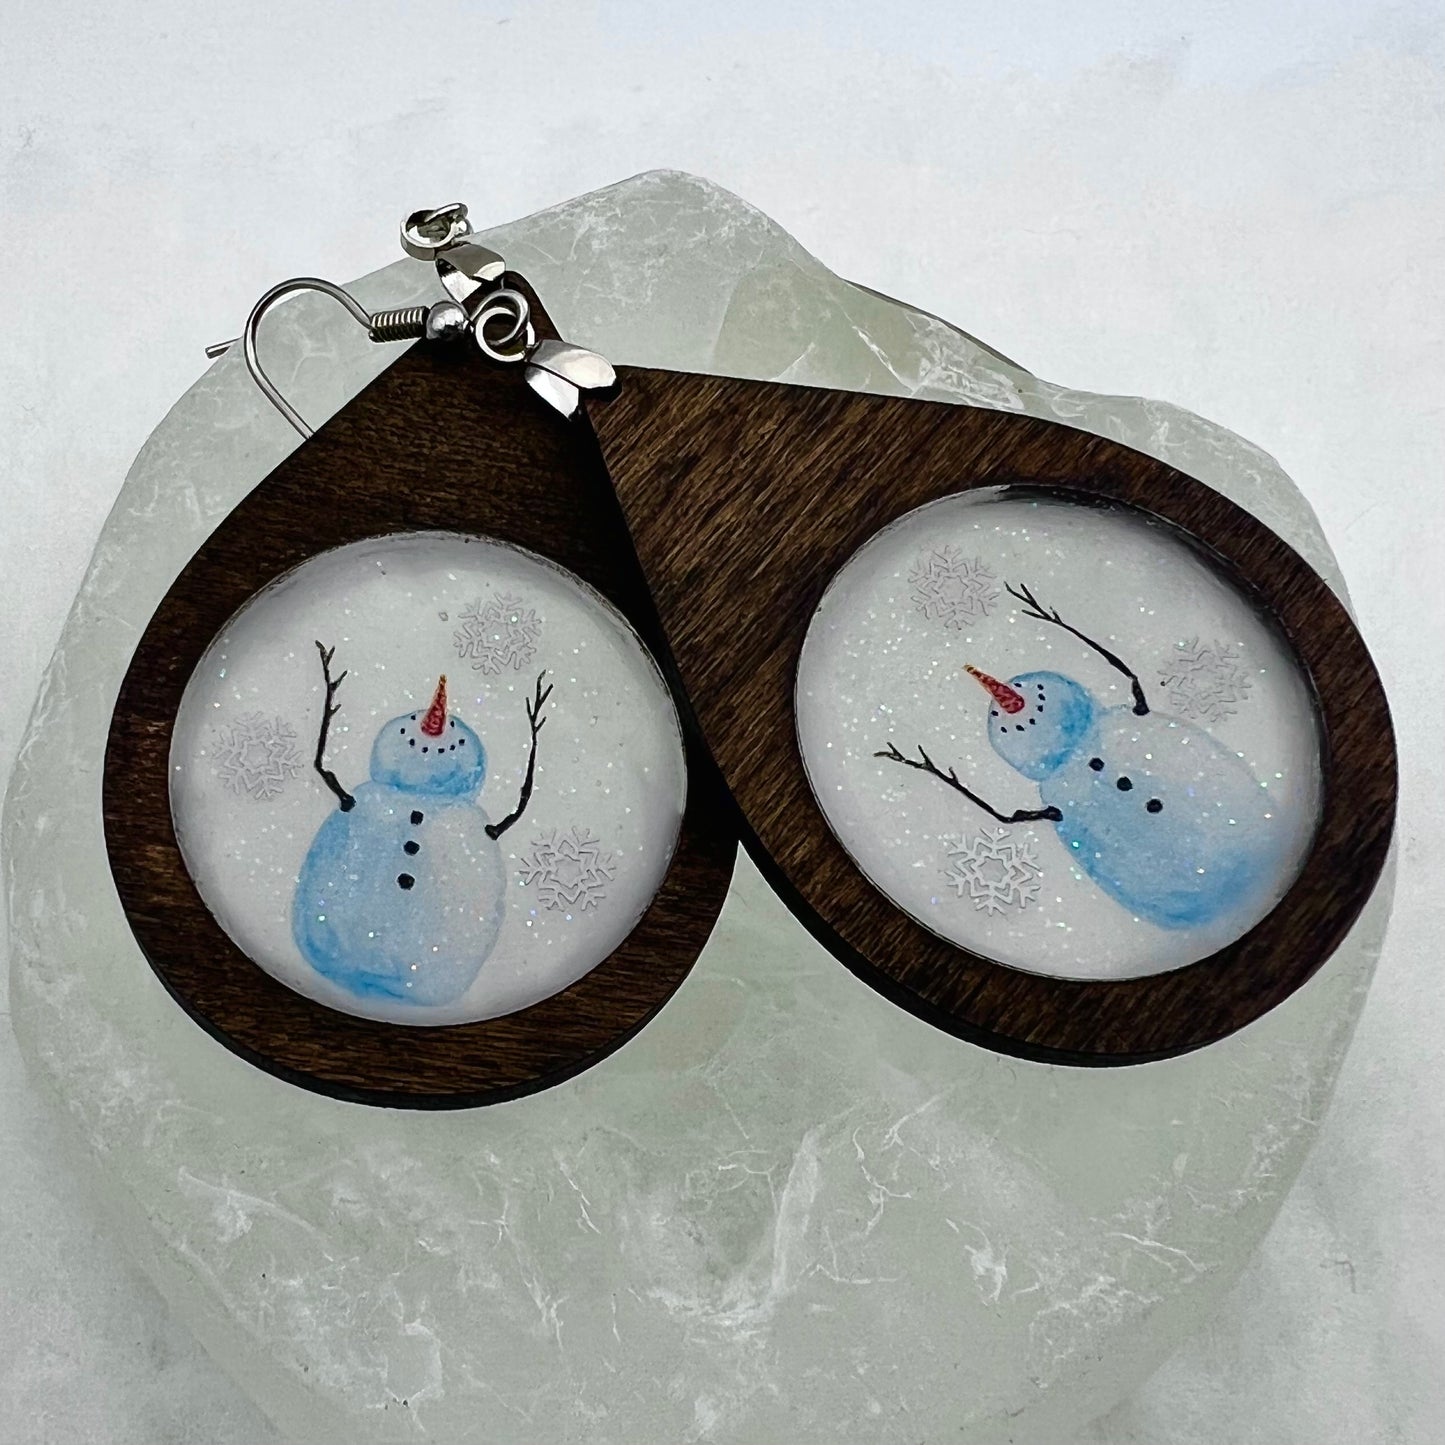 Whimsical Snowman Peekaboo Earrings - Wooden Earrings